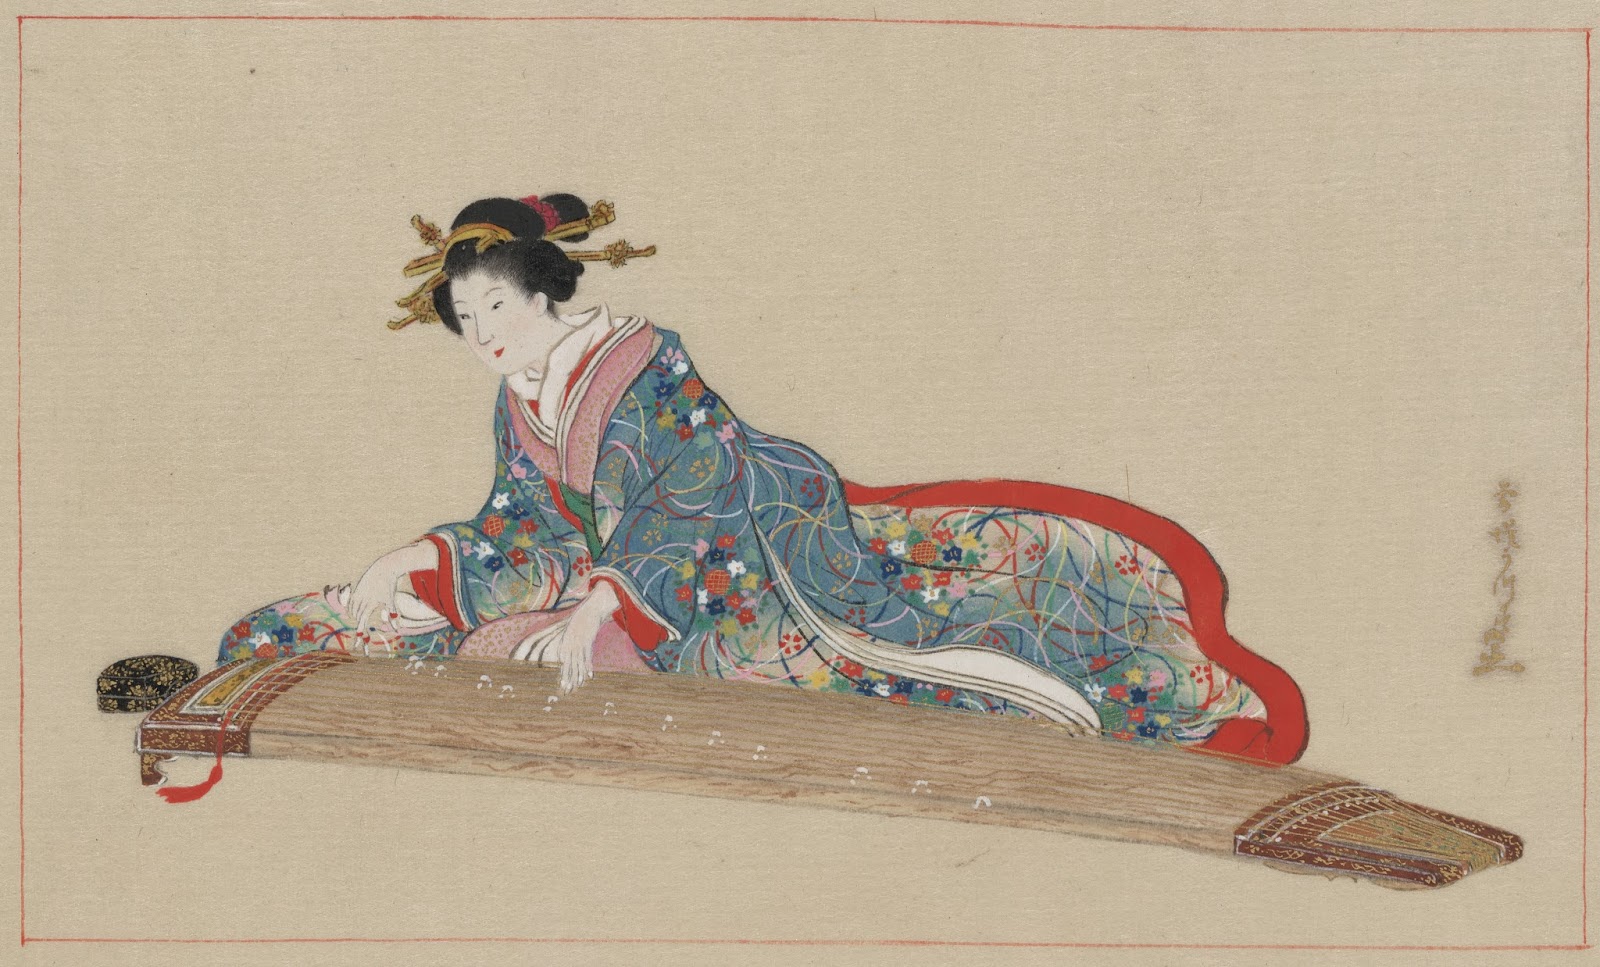 Tranh vẽ Samurai Nhật Bản